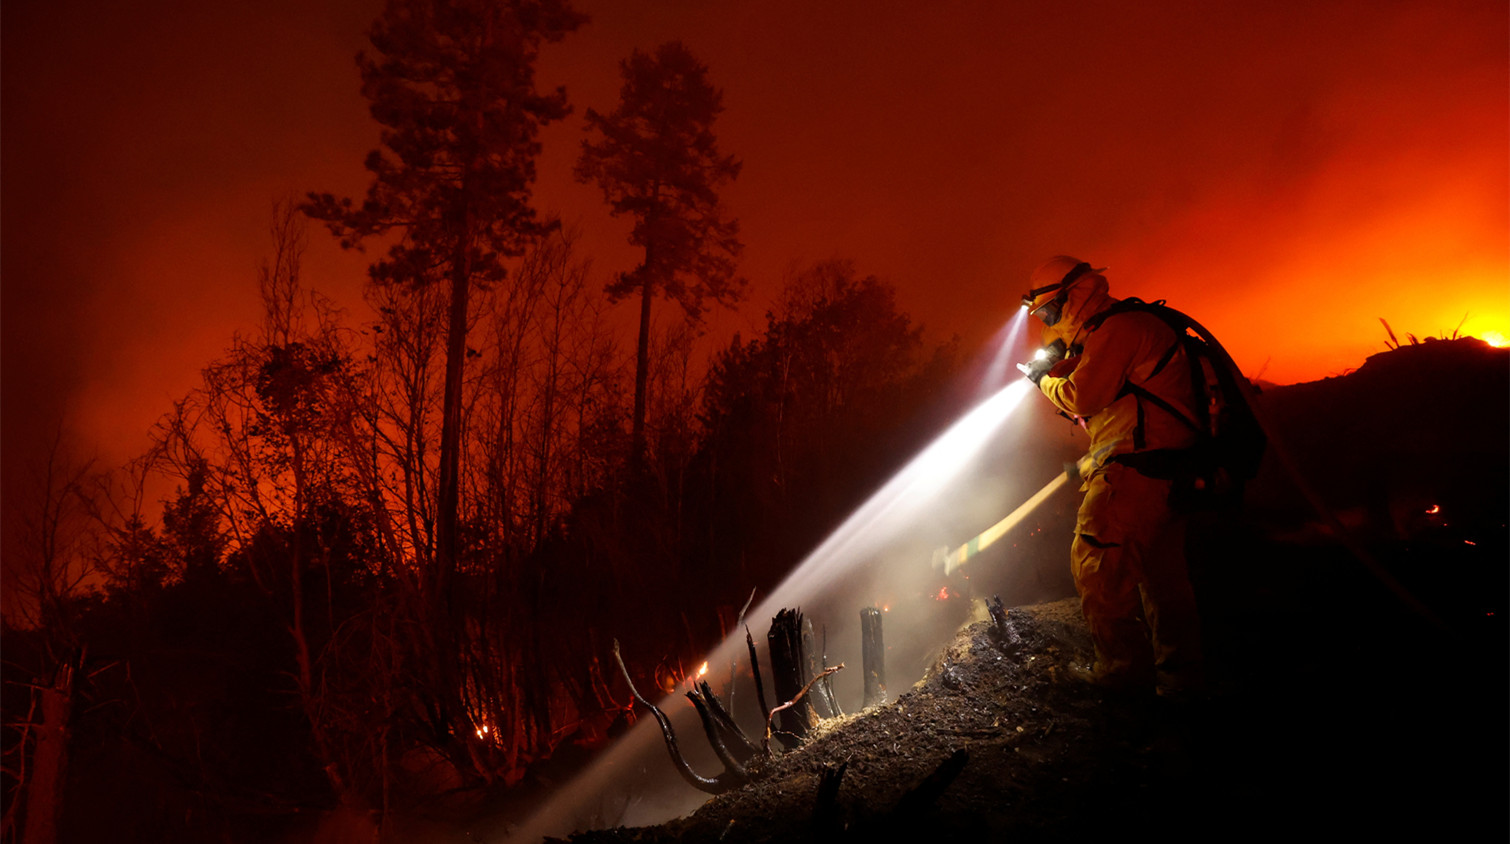 近百場大型山火在美國西部蔓延 多地發布空氣質素警報